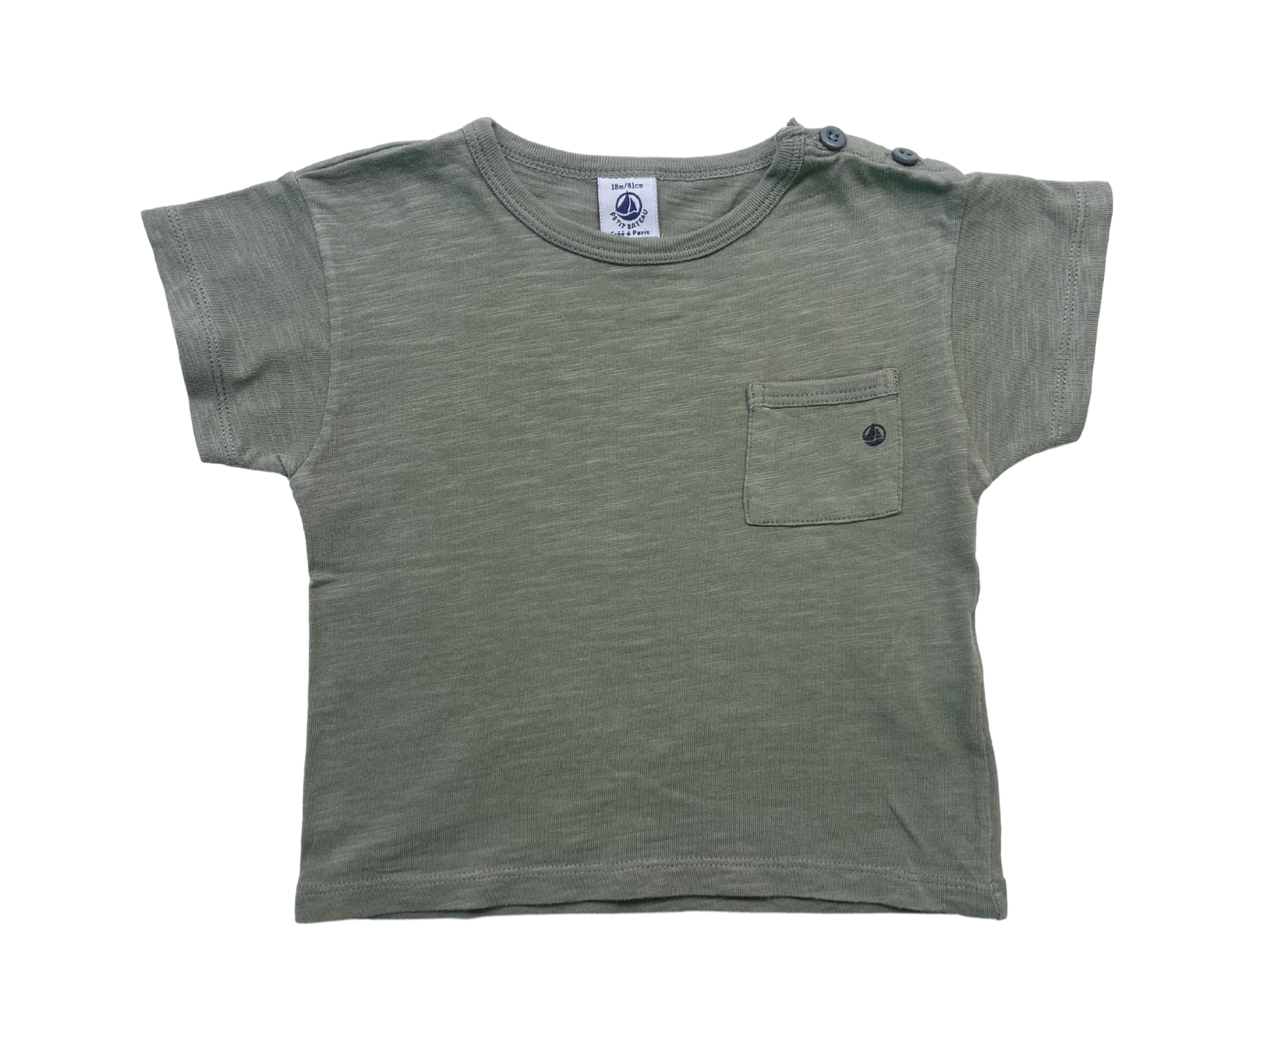 PETIT BATEAU - T-shirt en coton kaki - 18 mois